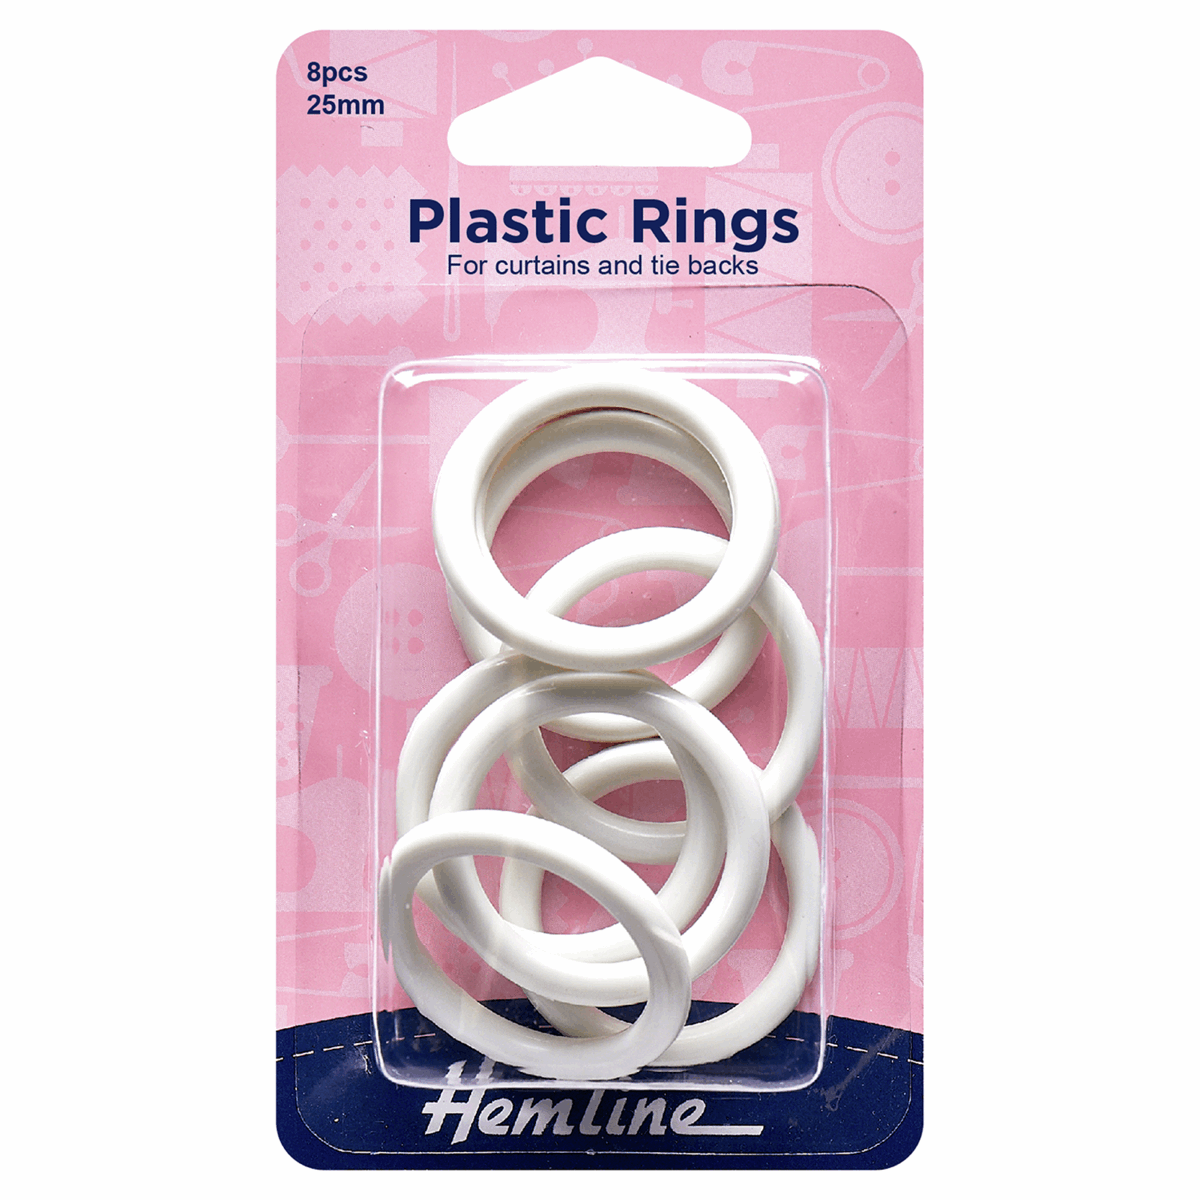 Hemline White Plastic Curtain Rings - 25mm (Pack of 8)